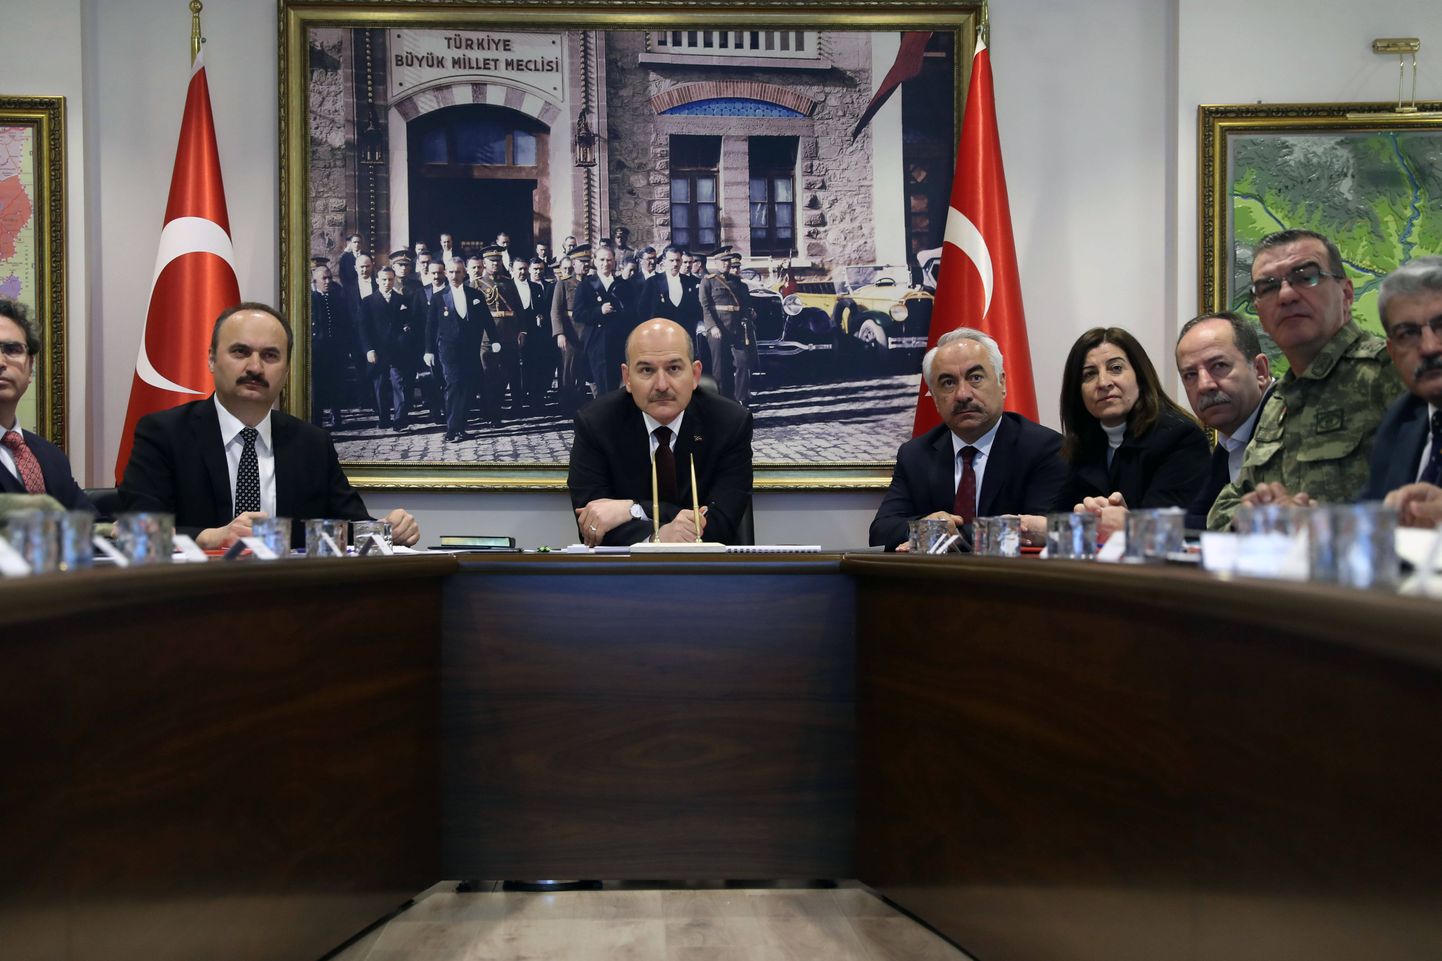 Türgi mõjukas siseminister Süleyman Soylu pressikonverentsil. Foto on illustratiivne.